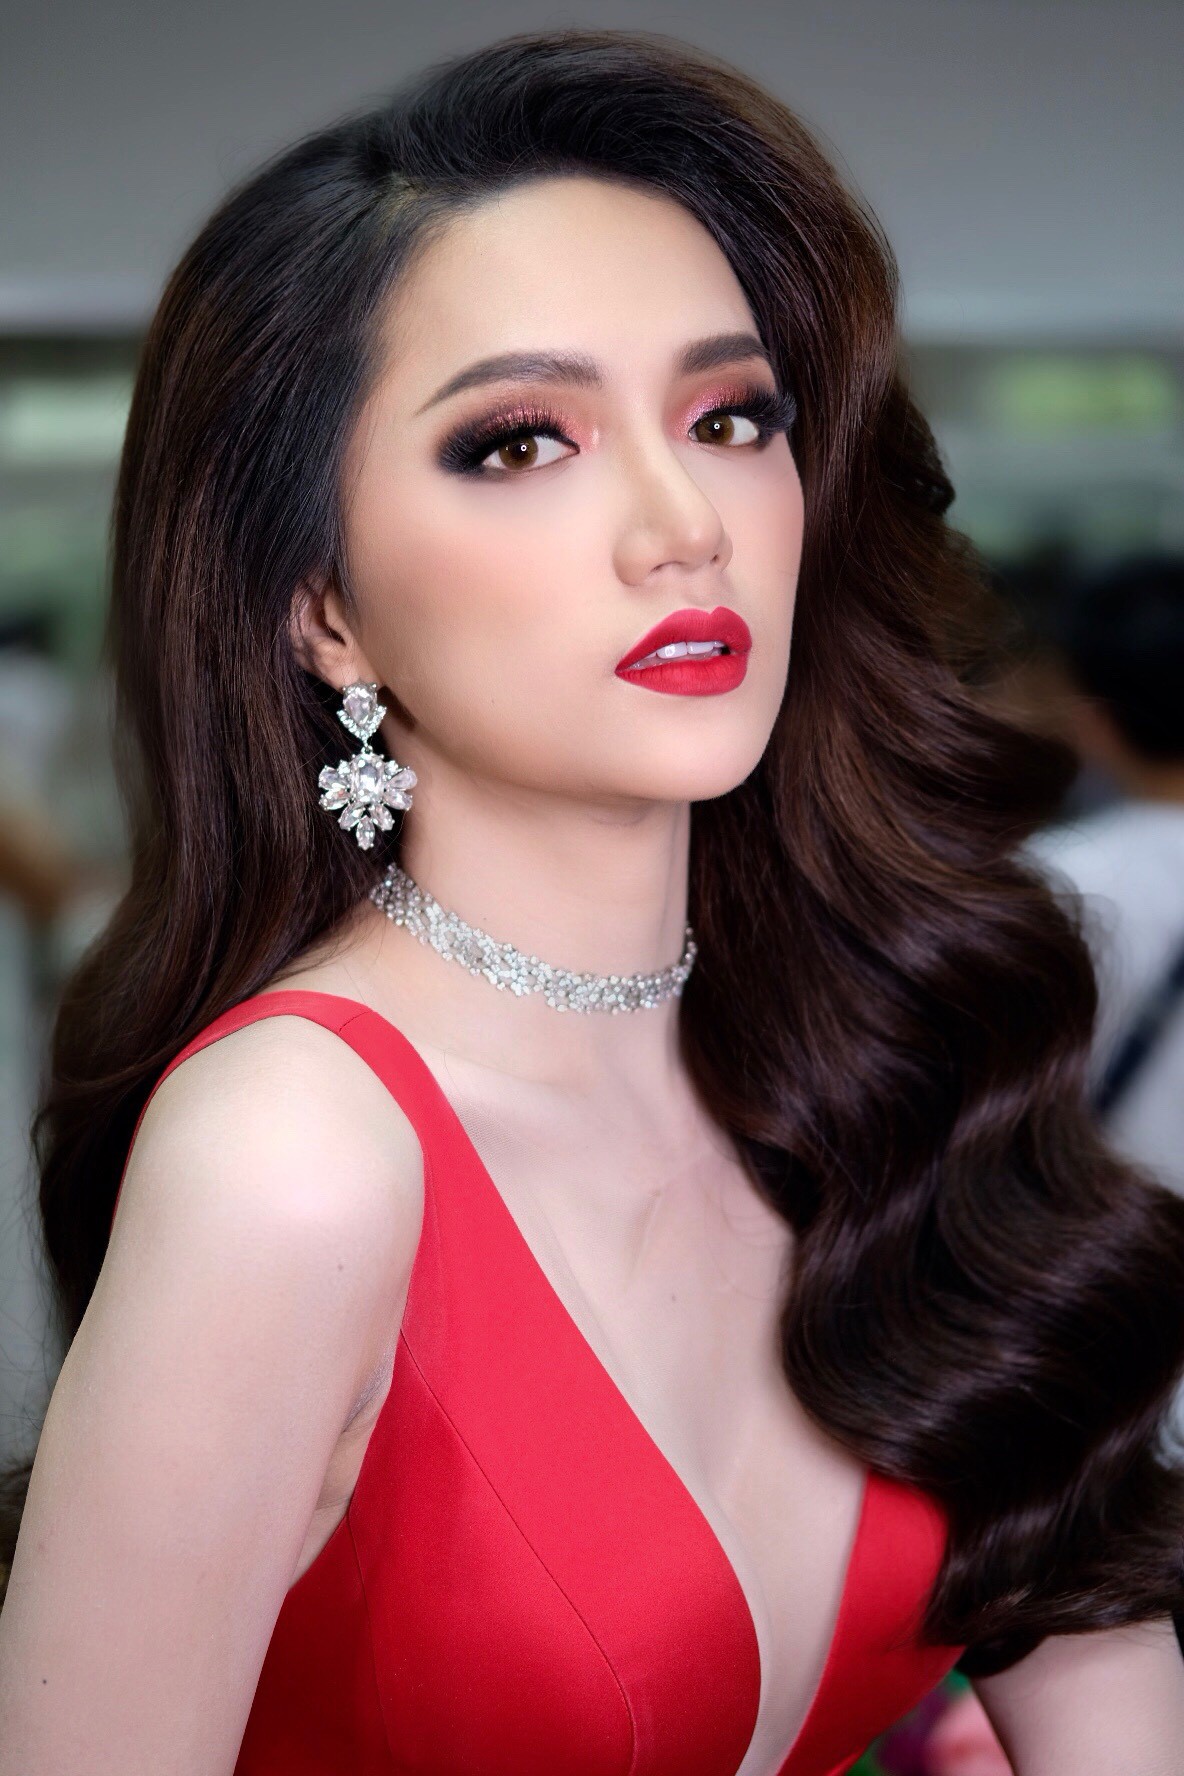 Đột nhập hậu trường chuẩn bị gấp rút của Hương Giang trước giờ diễn ra chung kết Hoa hậu Chuyển giới Quốc tế 2018 - Ảnh 6.